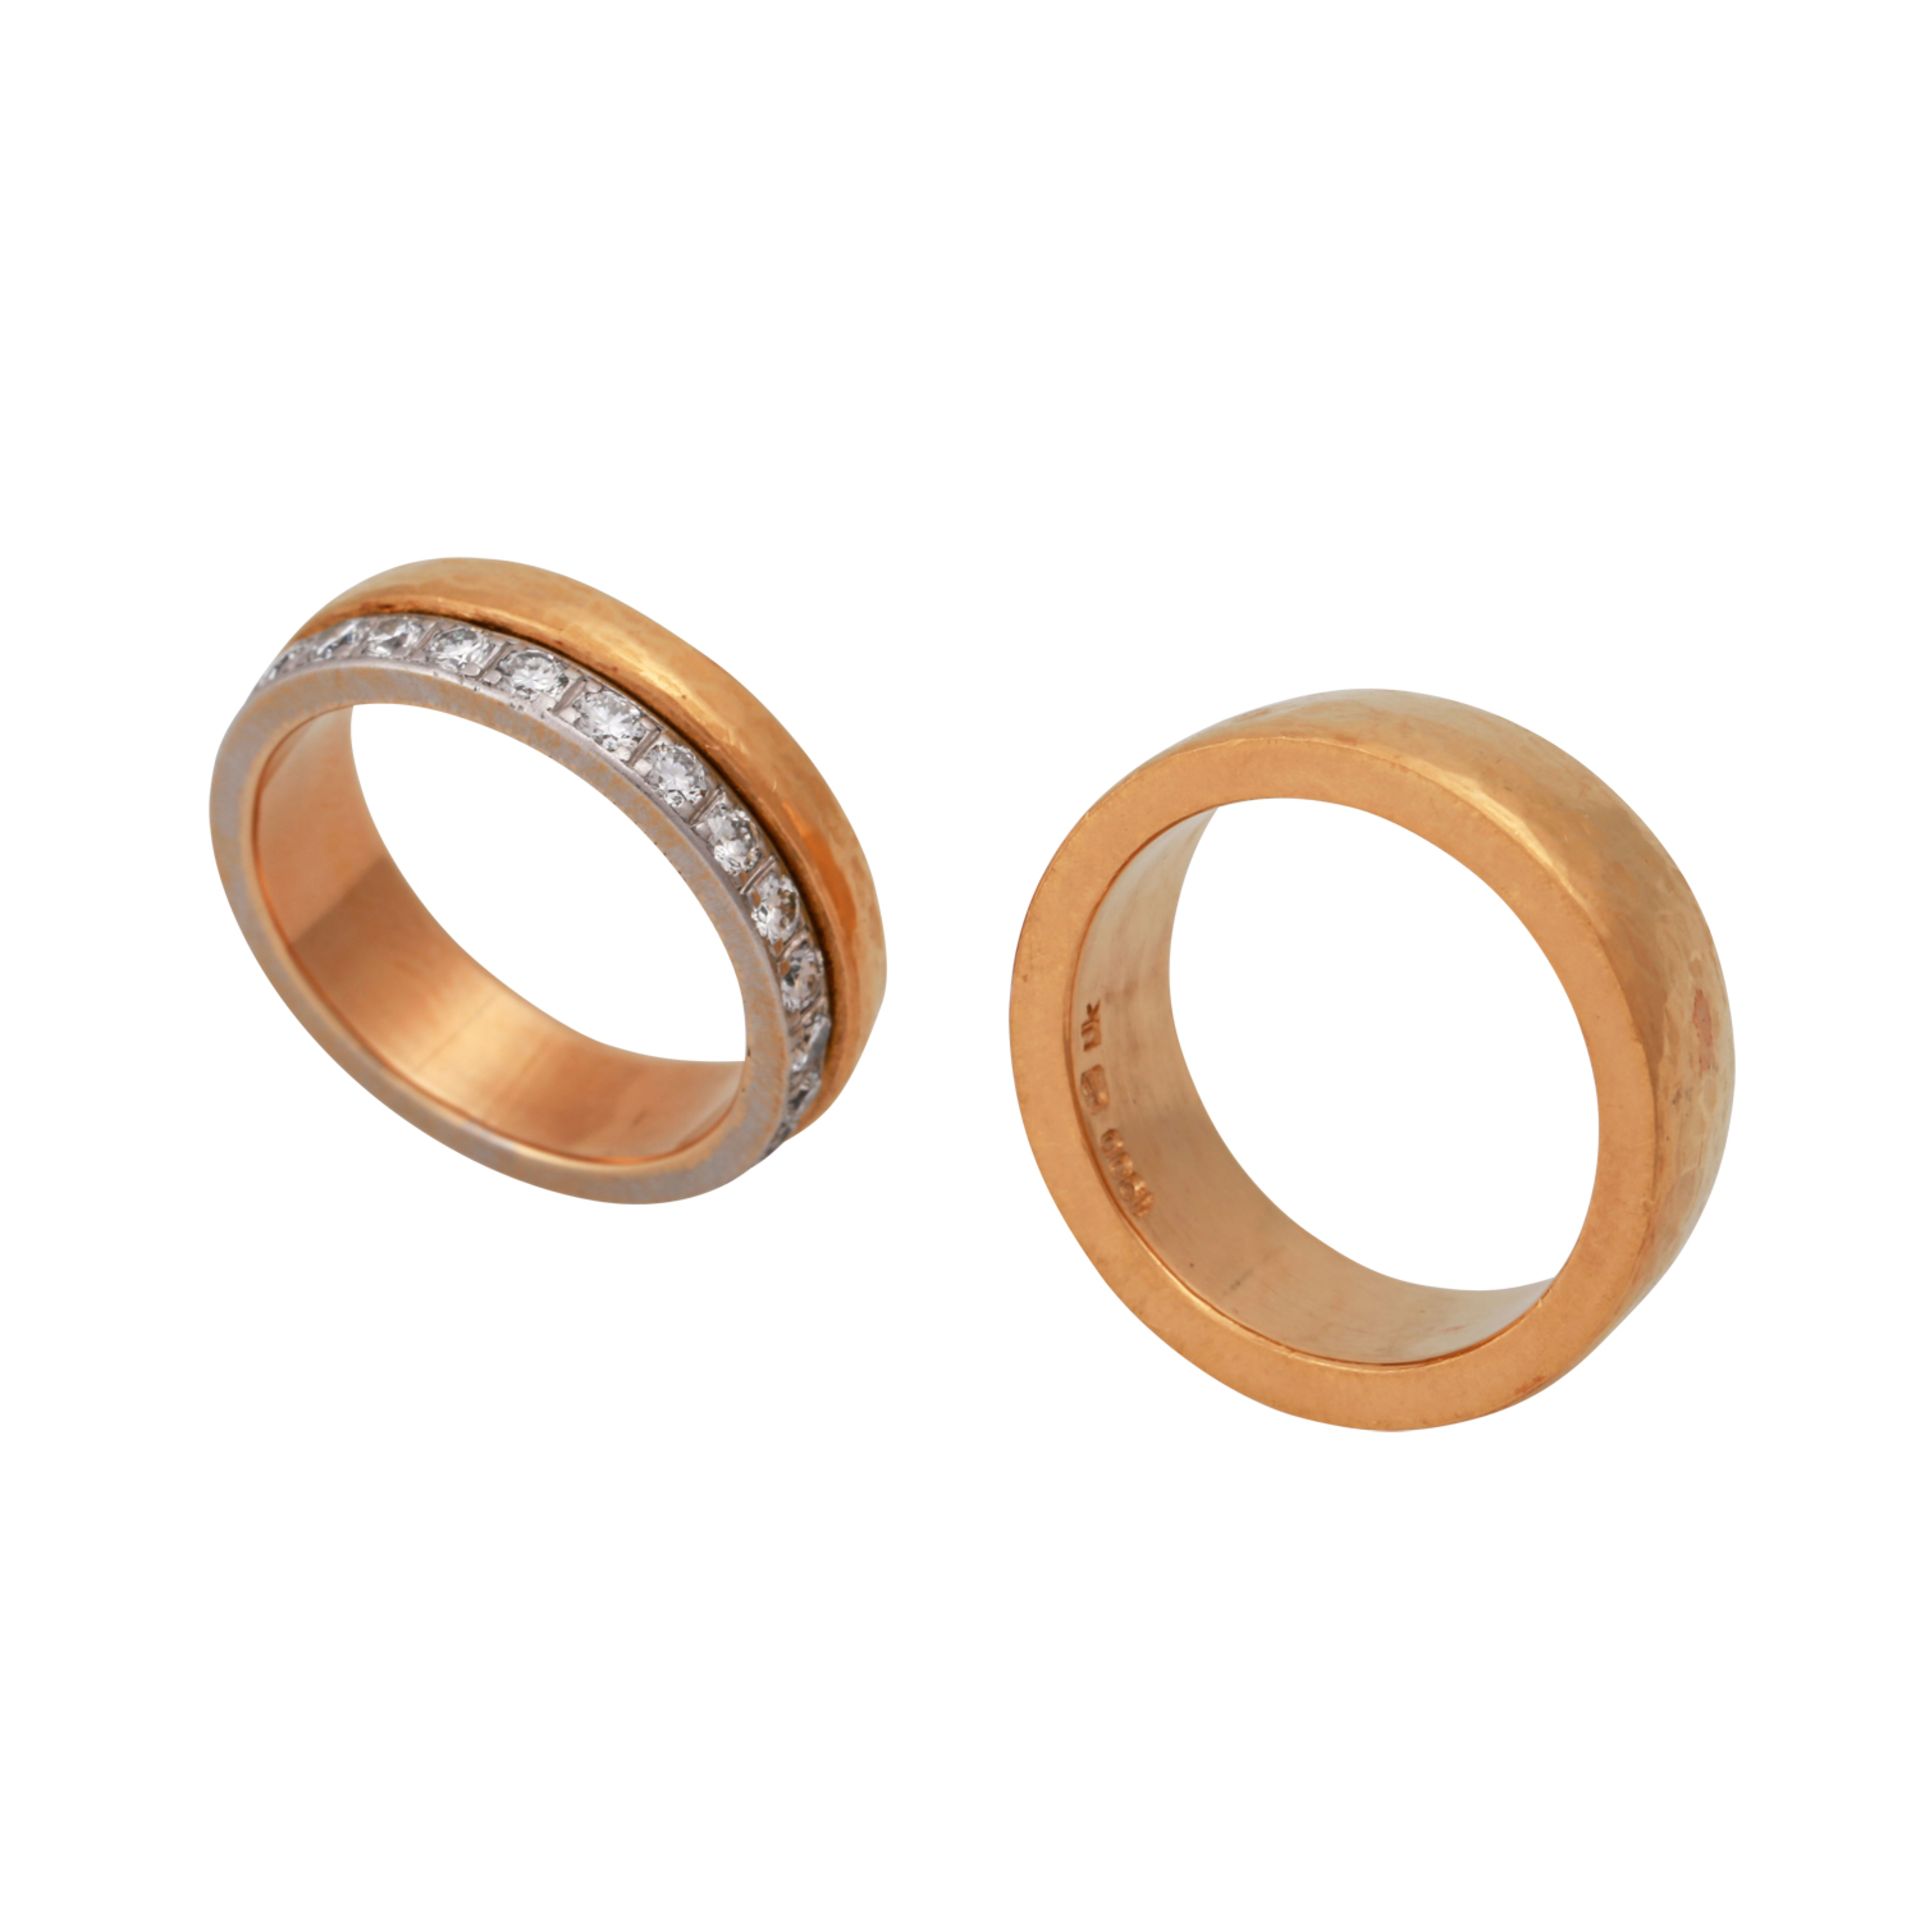 2 Ringe, davon 1 mit Brillantenvon zus. ca. 1,4 ct, gute Farbe u. Reinheit, GG 22,8K+Platin, RW: 56; - Bild 4 aus 5